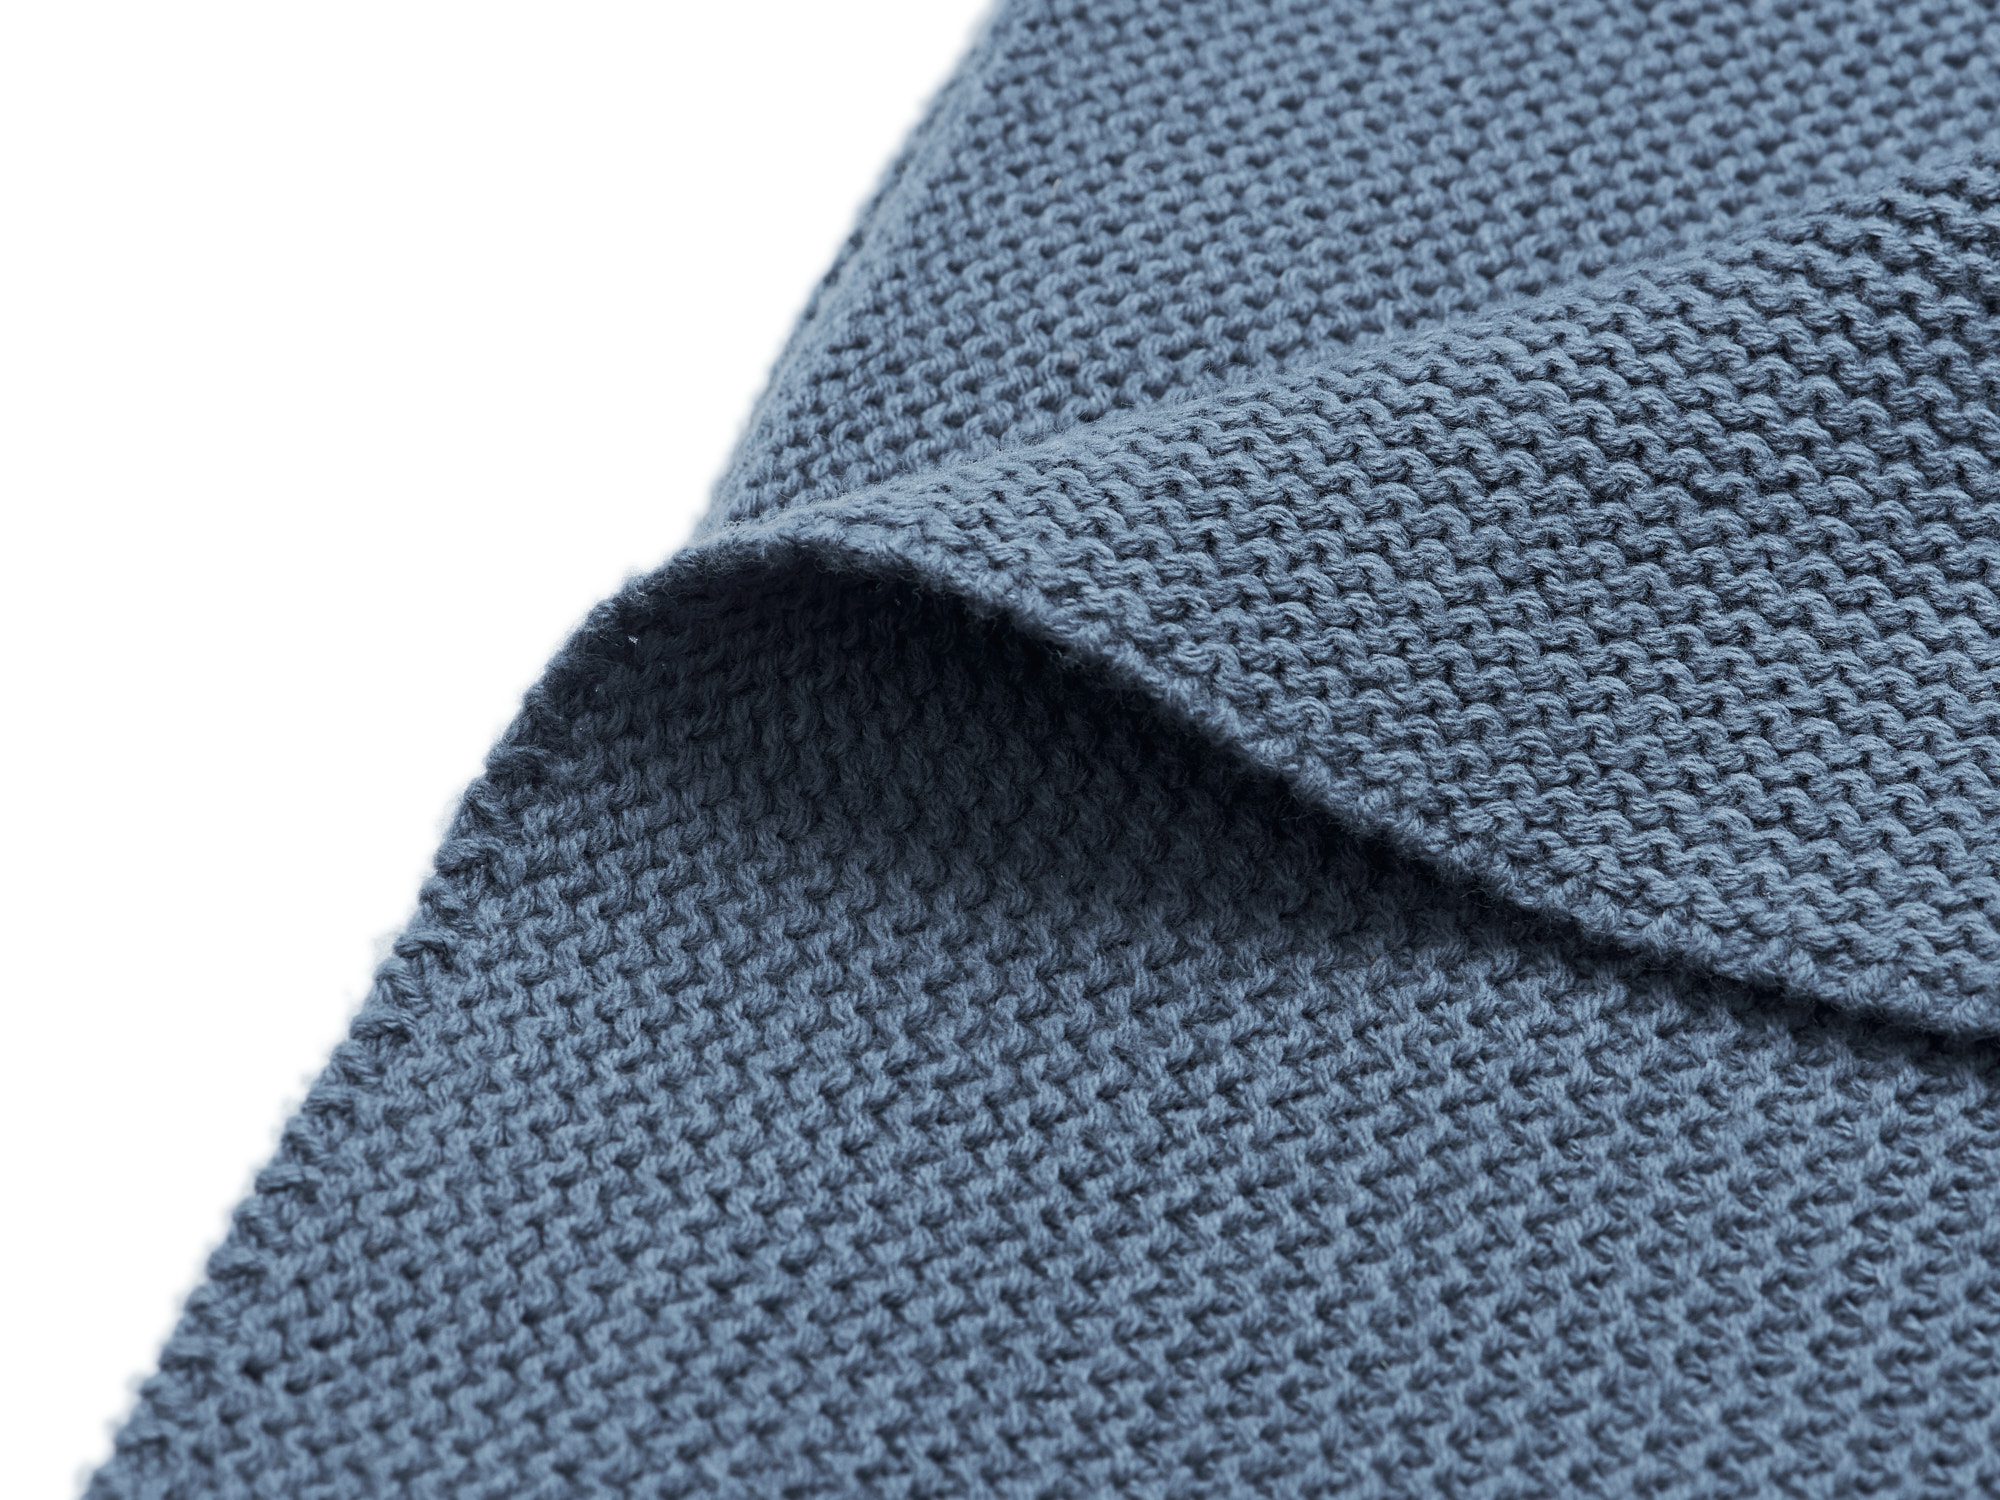 Wieg Deken Basic Knit 75x100cm - Jeans Blue